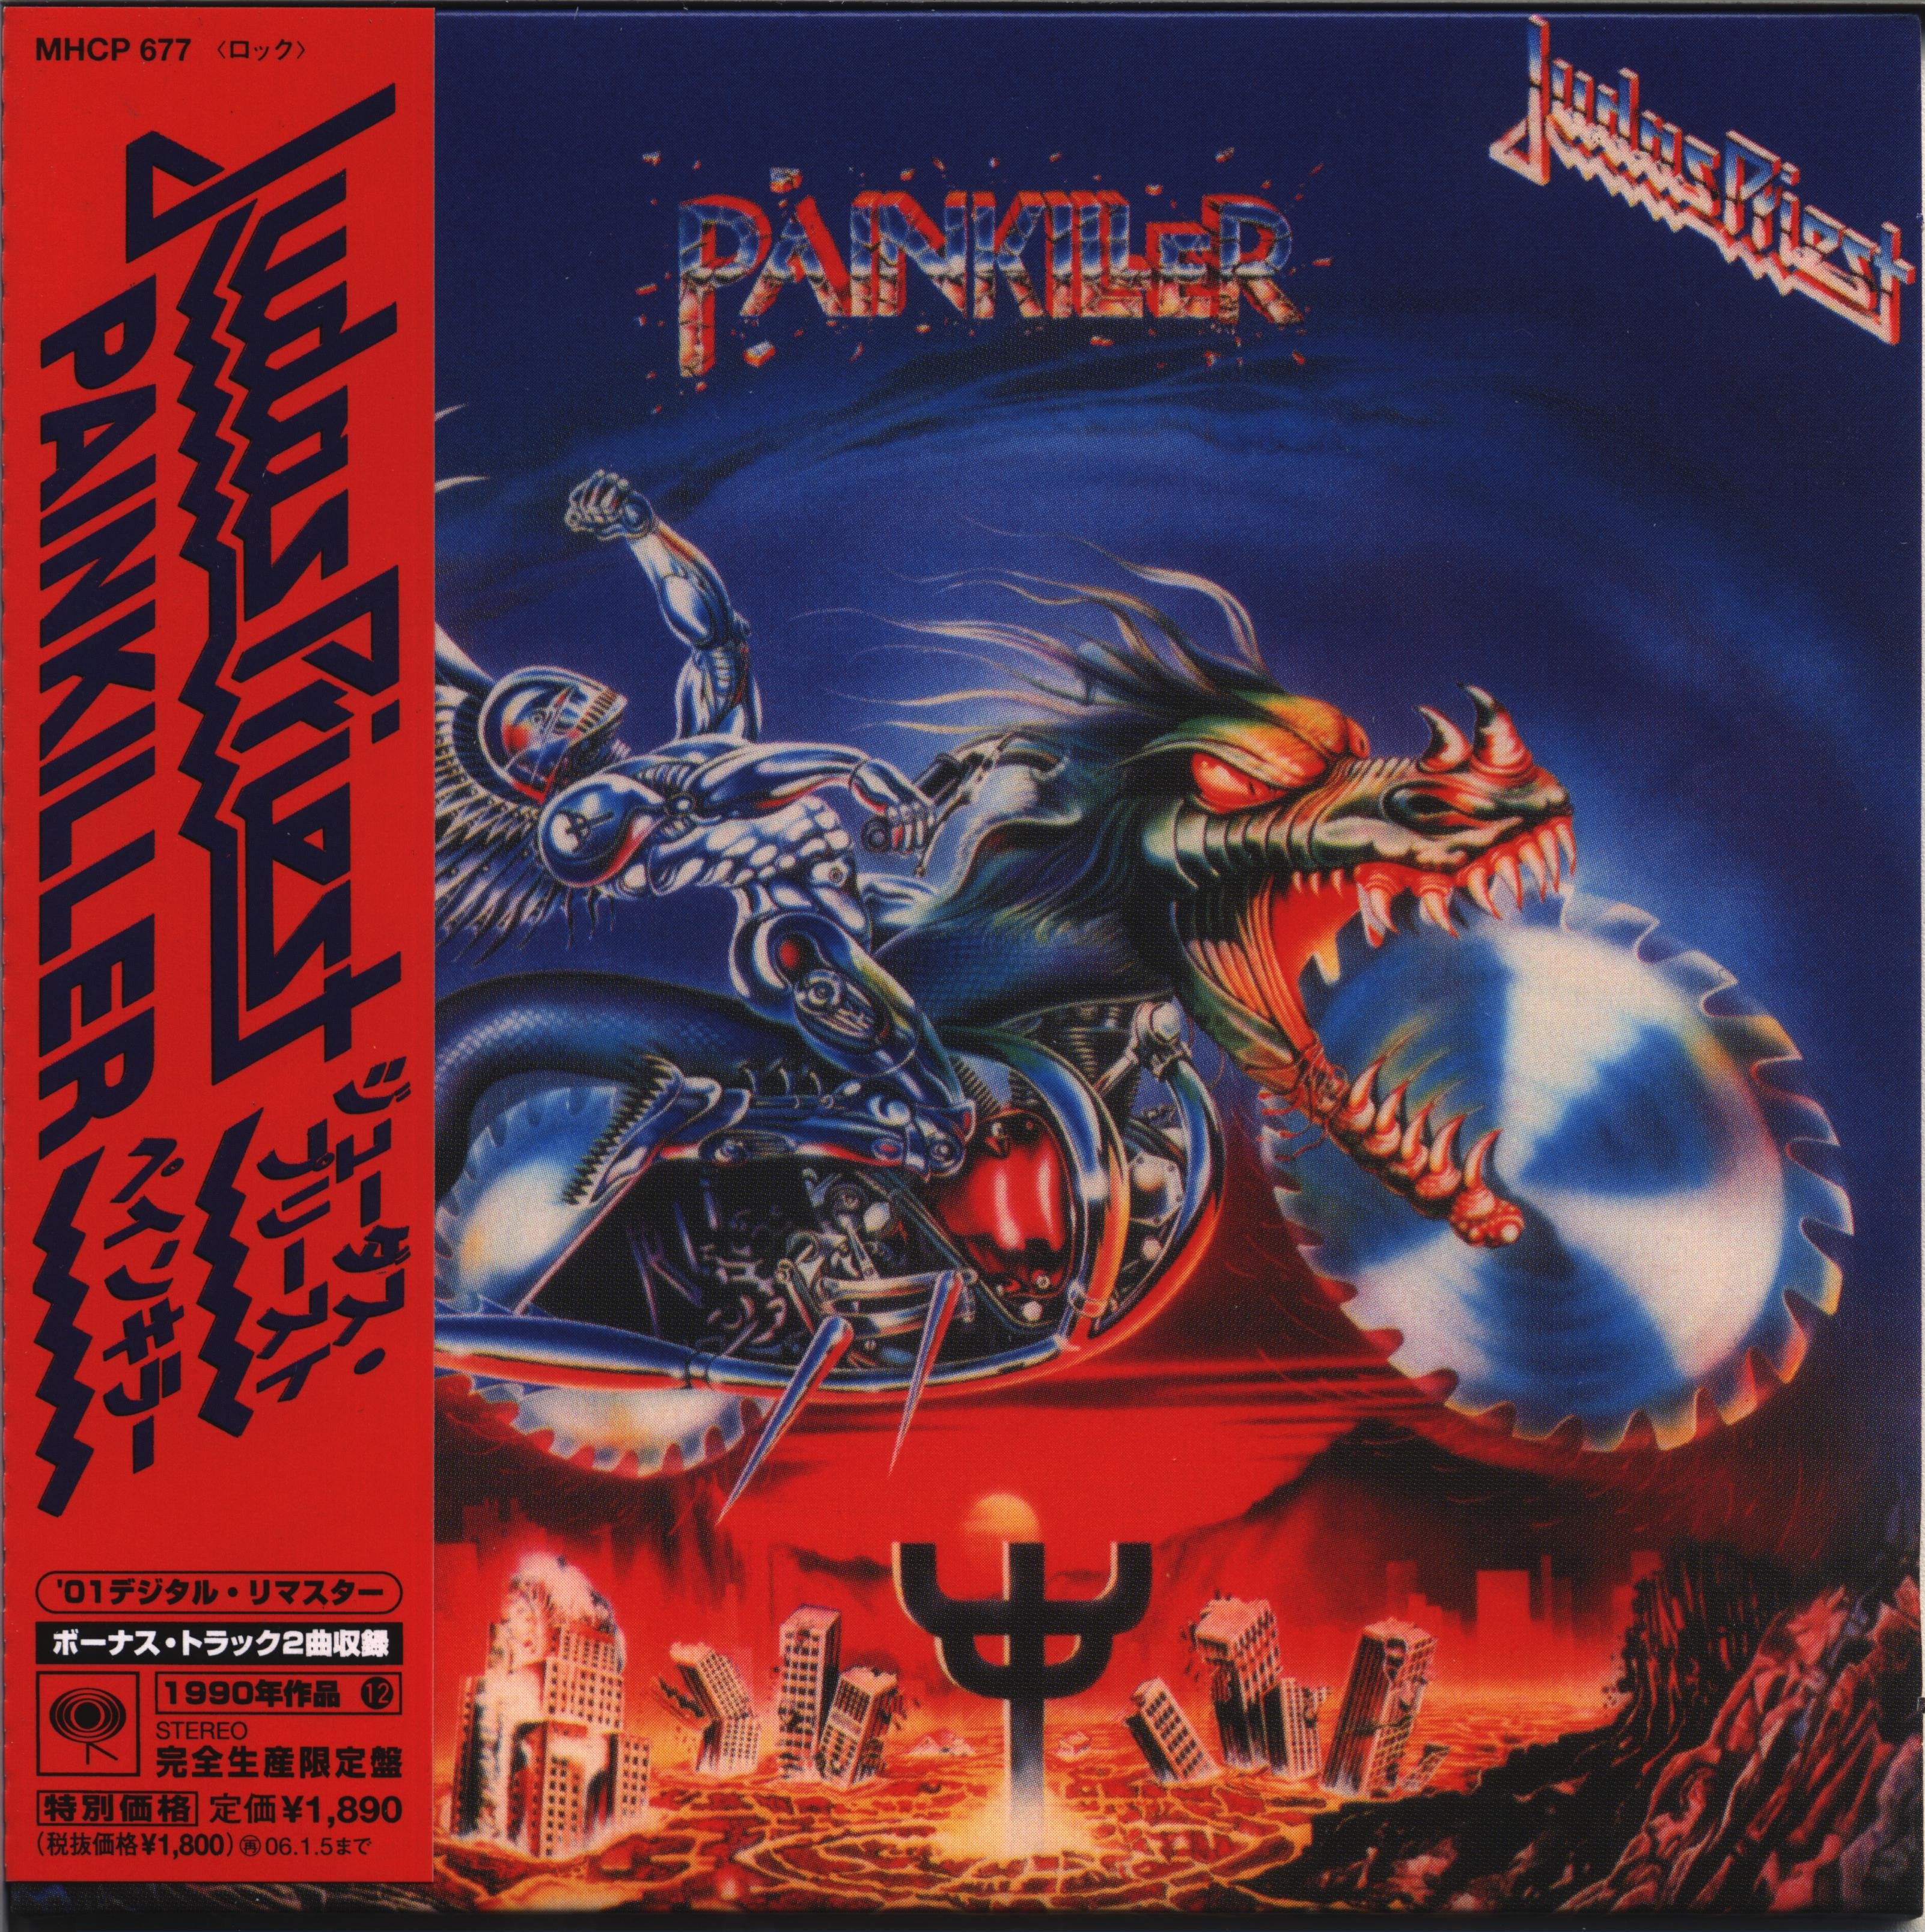 Группа judas priest альбомы. Judas Priest 1990 Painkiller обложка альбома. Обложки дисков Judas Priest. Judas Priest Painkiller обложка. Judas Priest 2024 обложка.